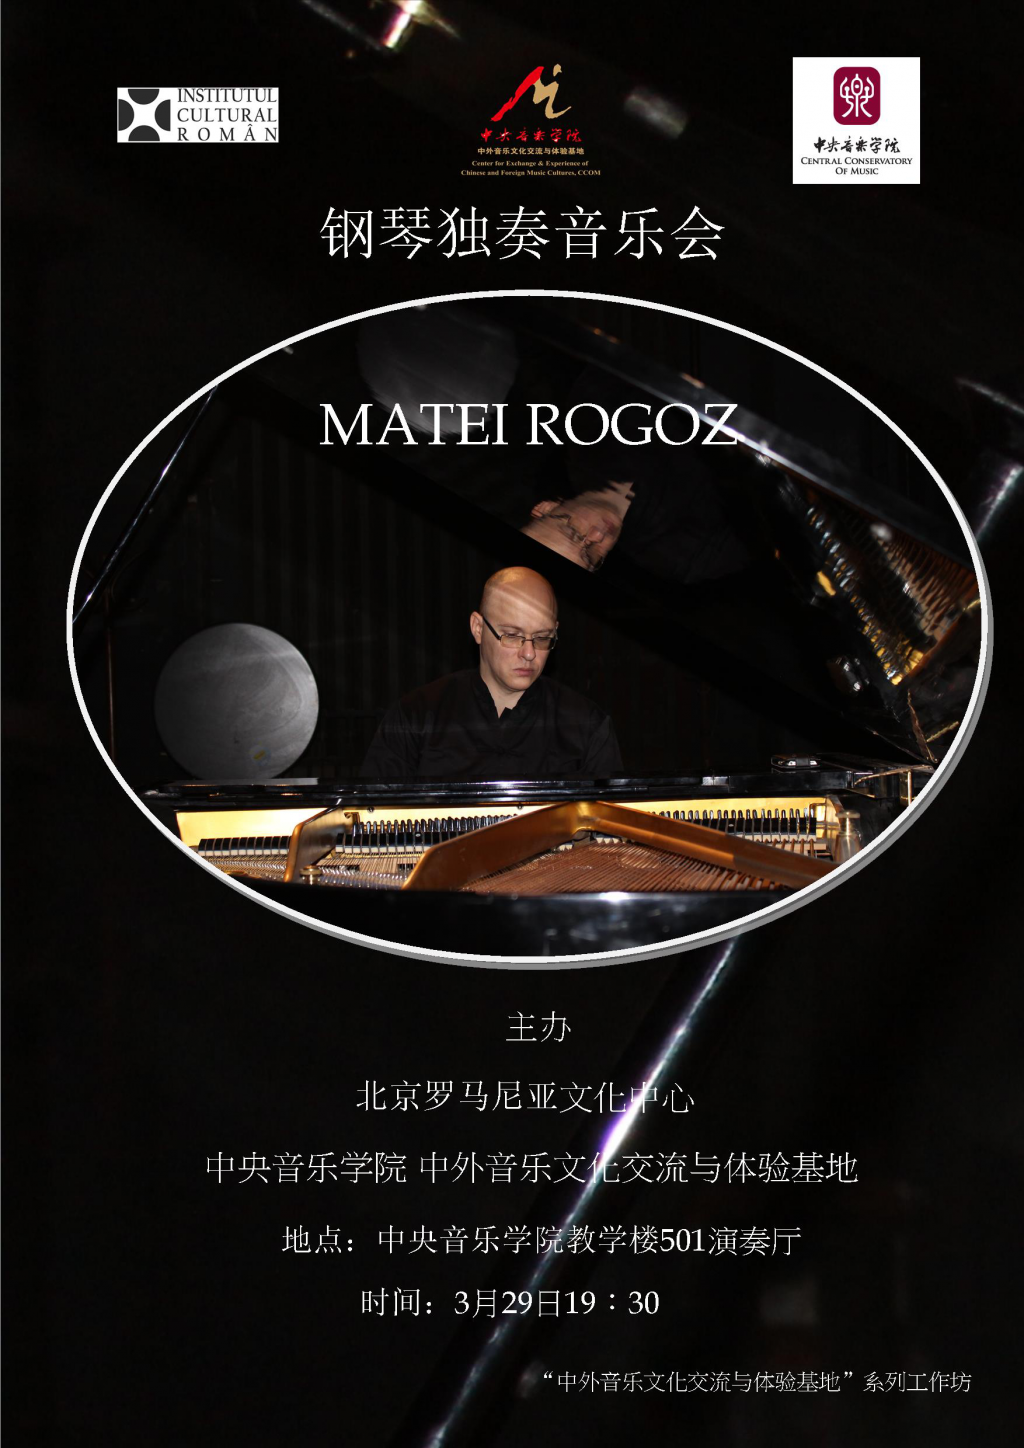 Muzica lui Enescu, la Conservatorul Central de Muzica din Beijing